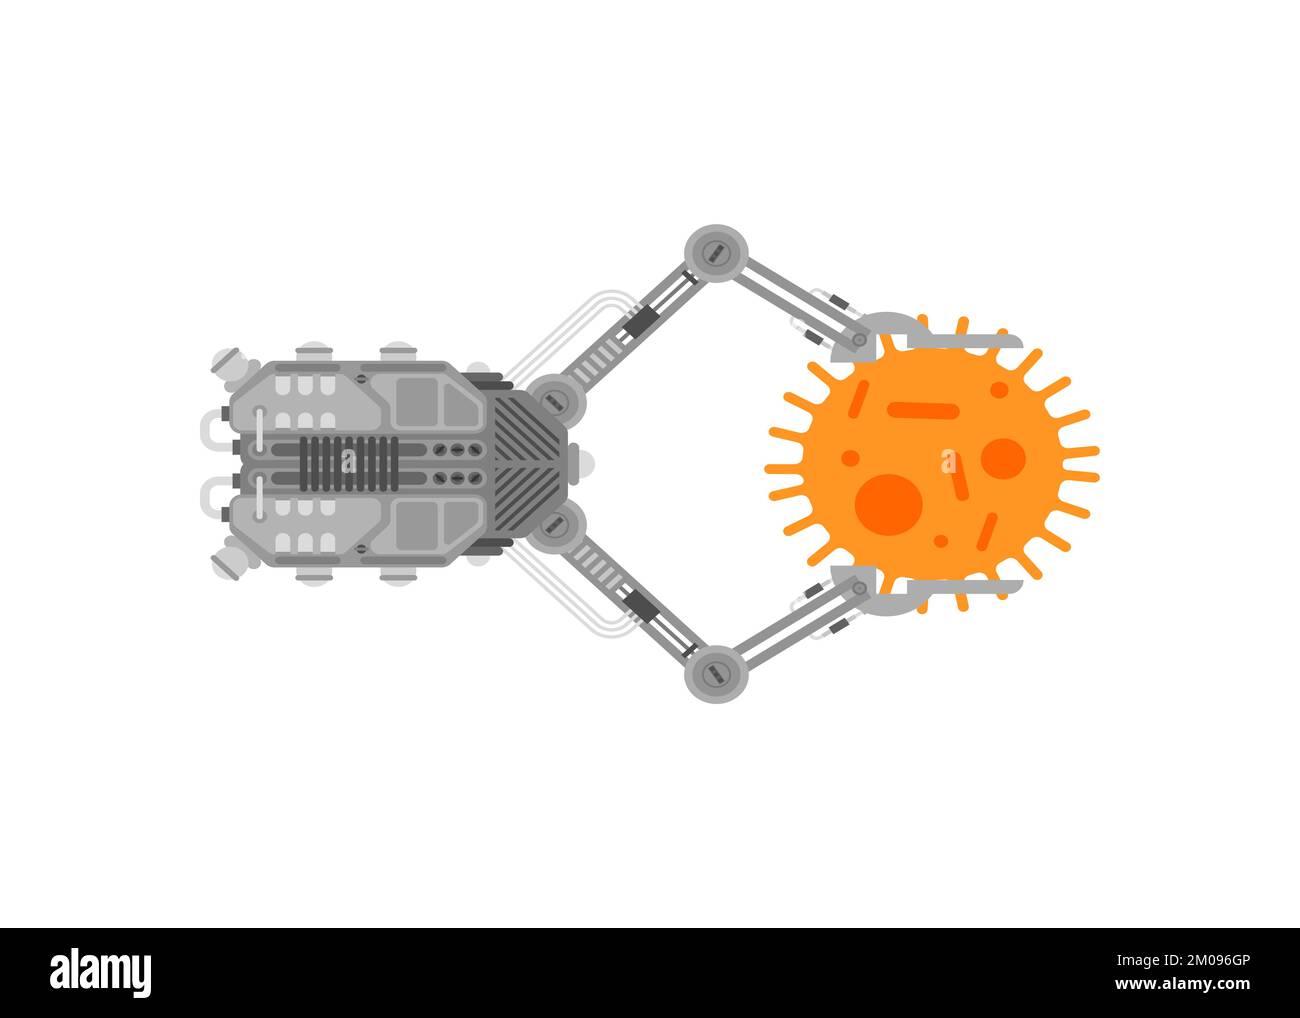 Nanobot and virus cell. Microrobot for treatment Stock Vector